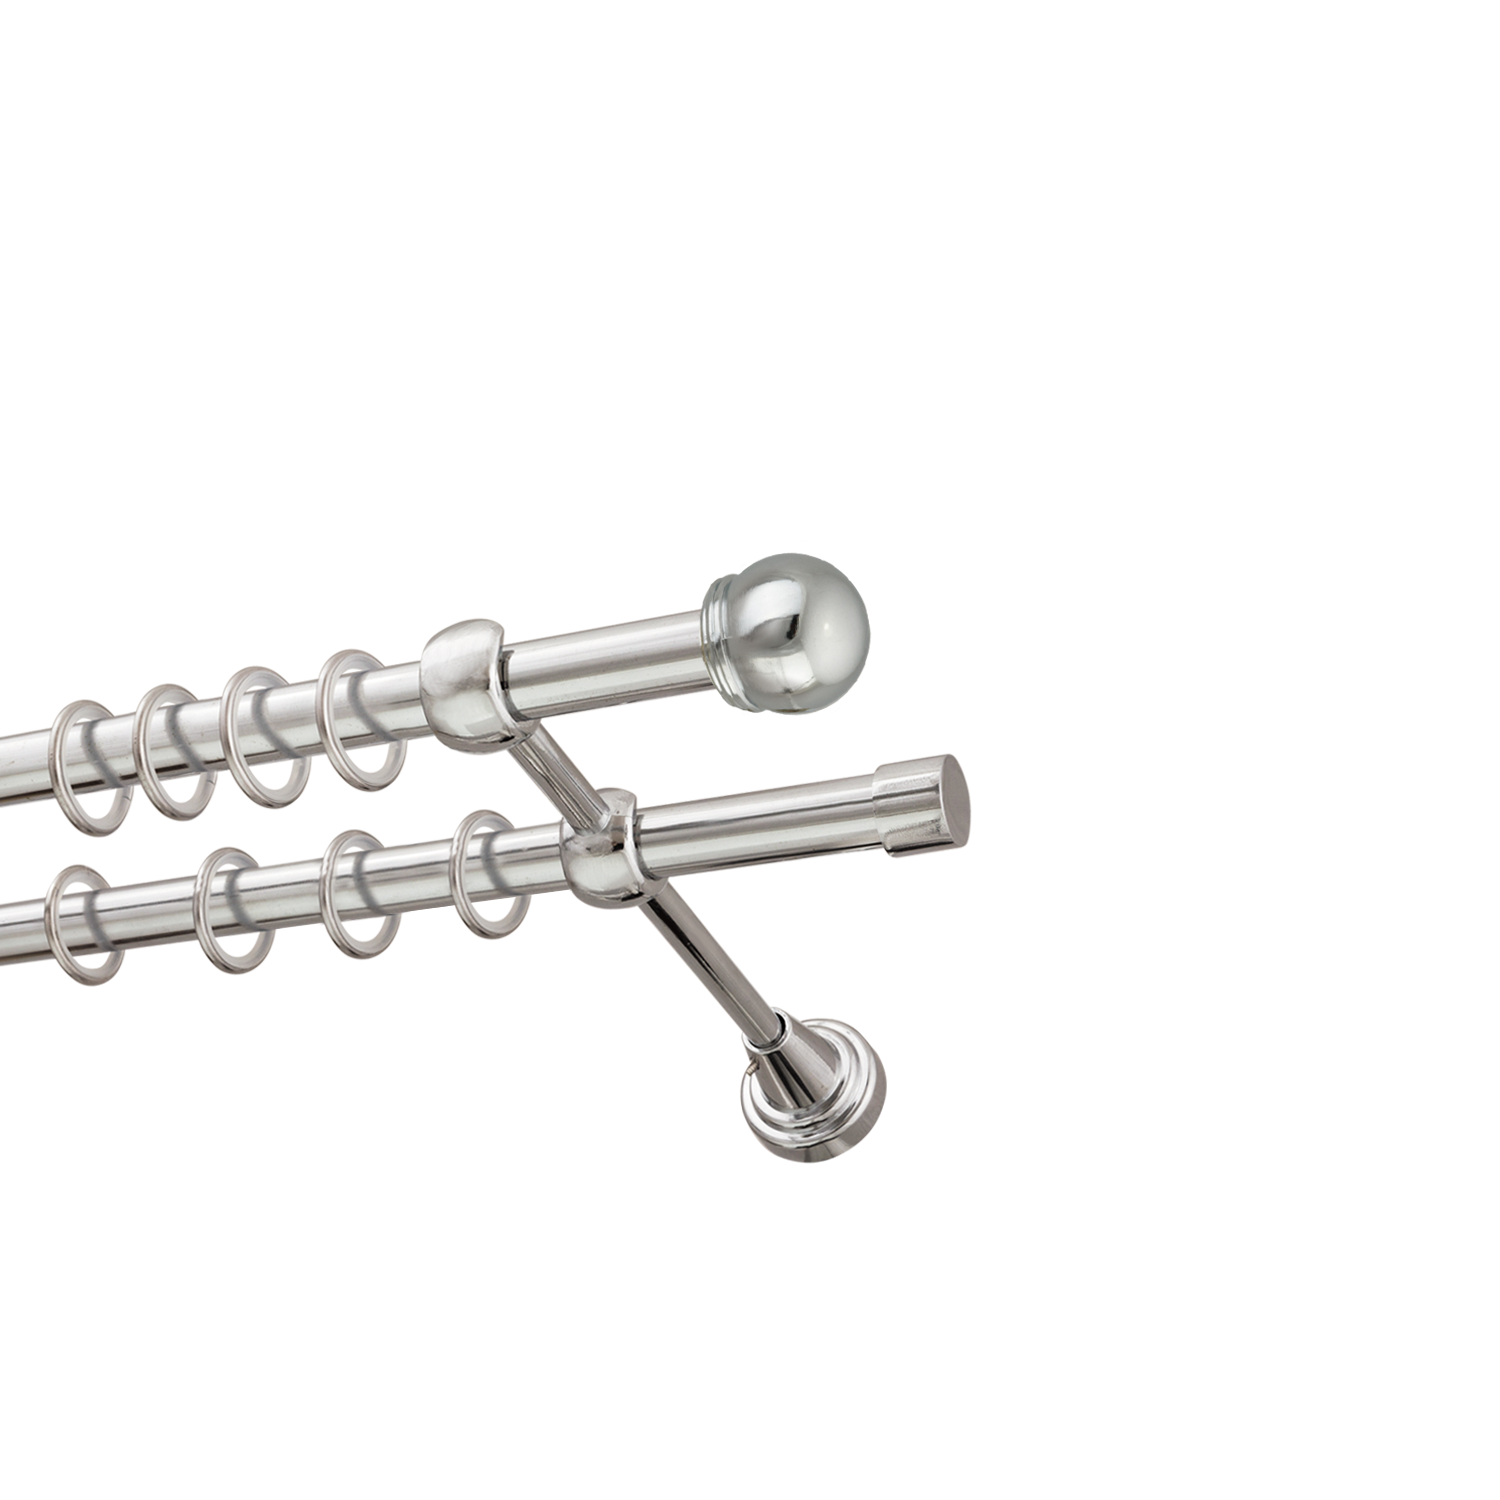 Металлический карниз для штор Вива, двухрядный 16/16 мм, серебро, гладкая штанга, длина 240 см